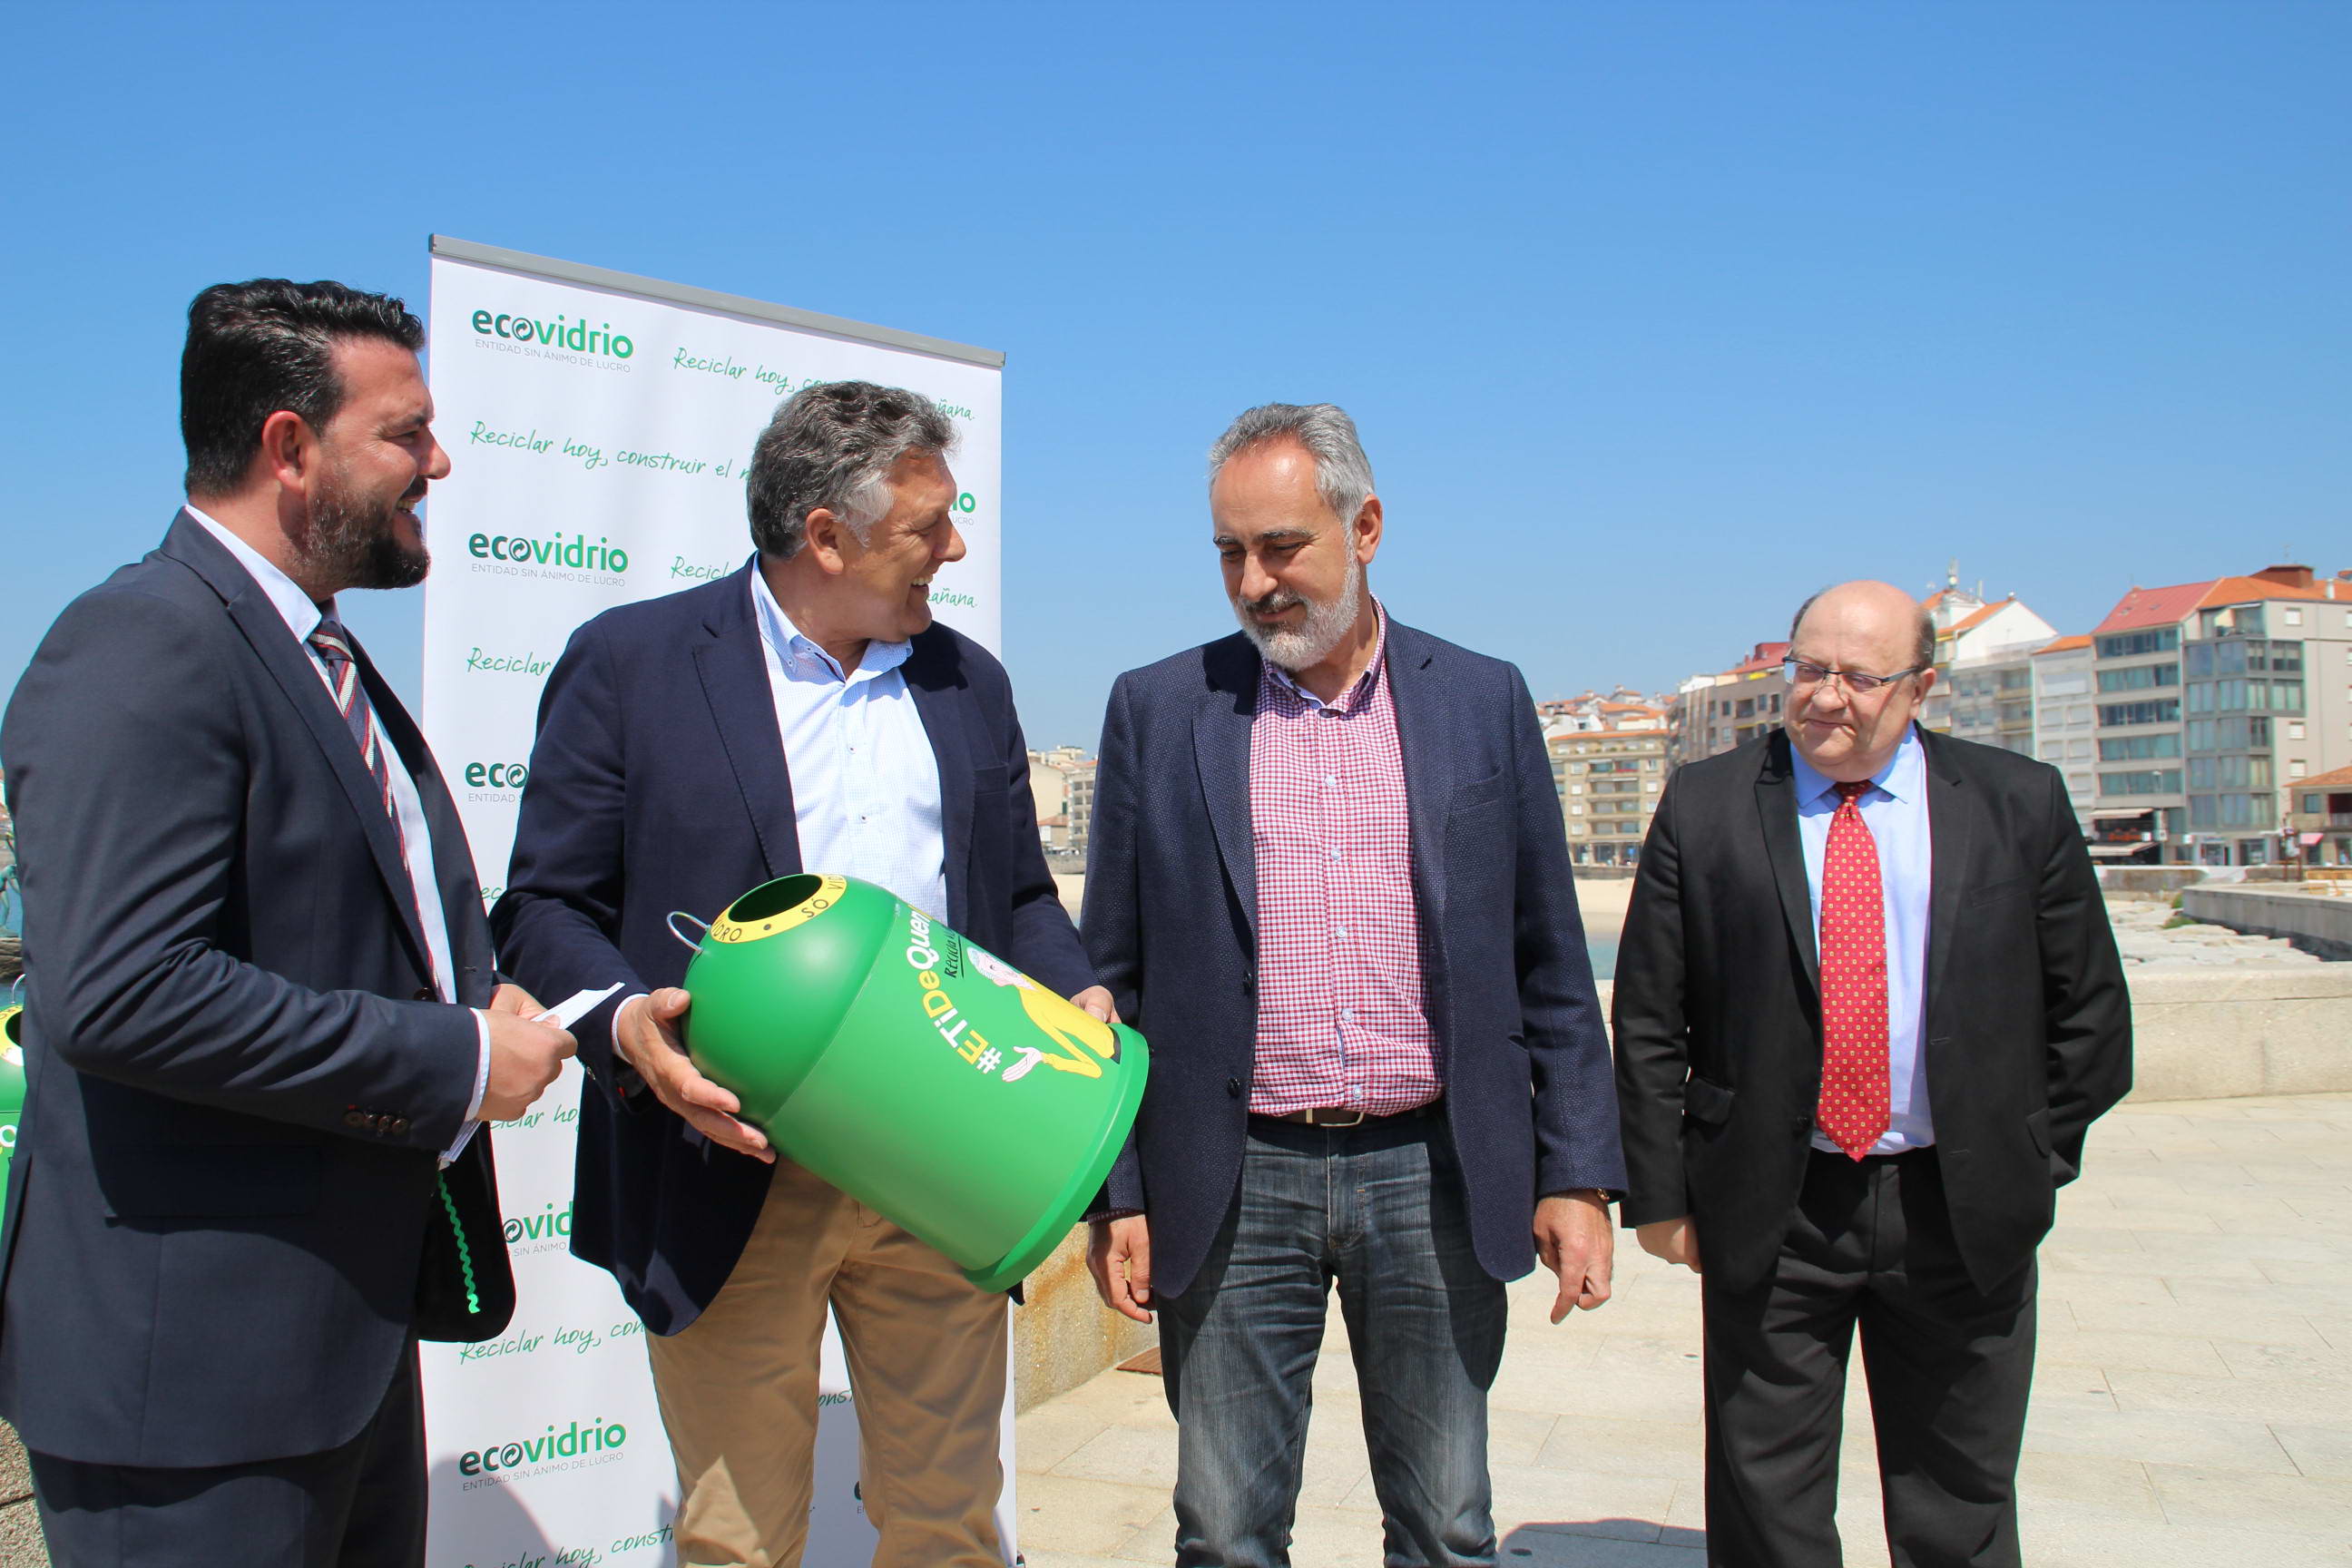 La recogida selectiva de envases de vidrio a través del contenedor verde registró un incremento del 8% en la provincia de Pontevedra